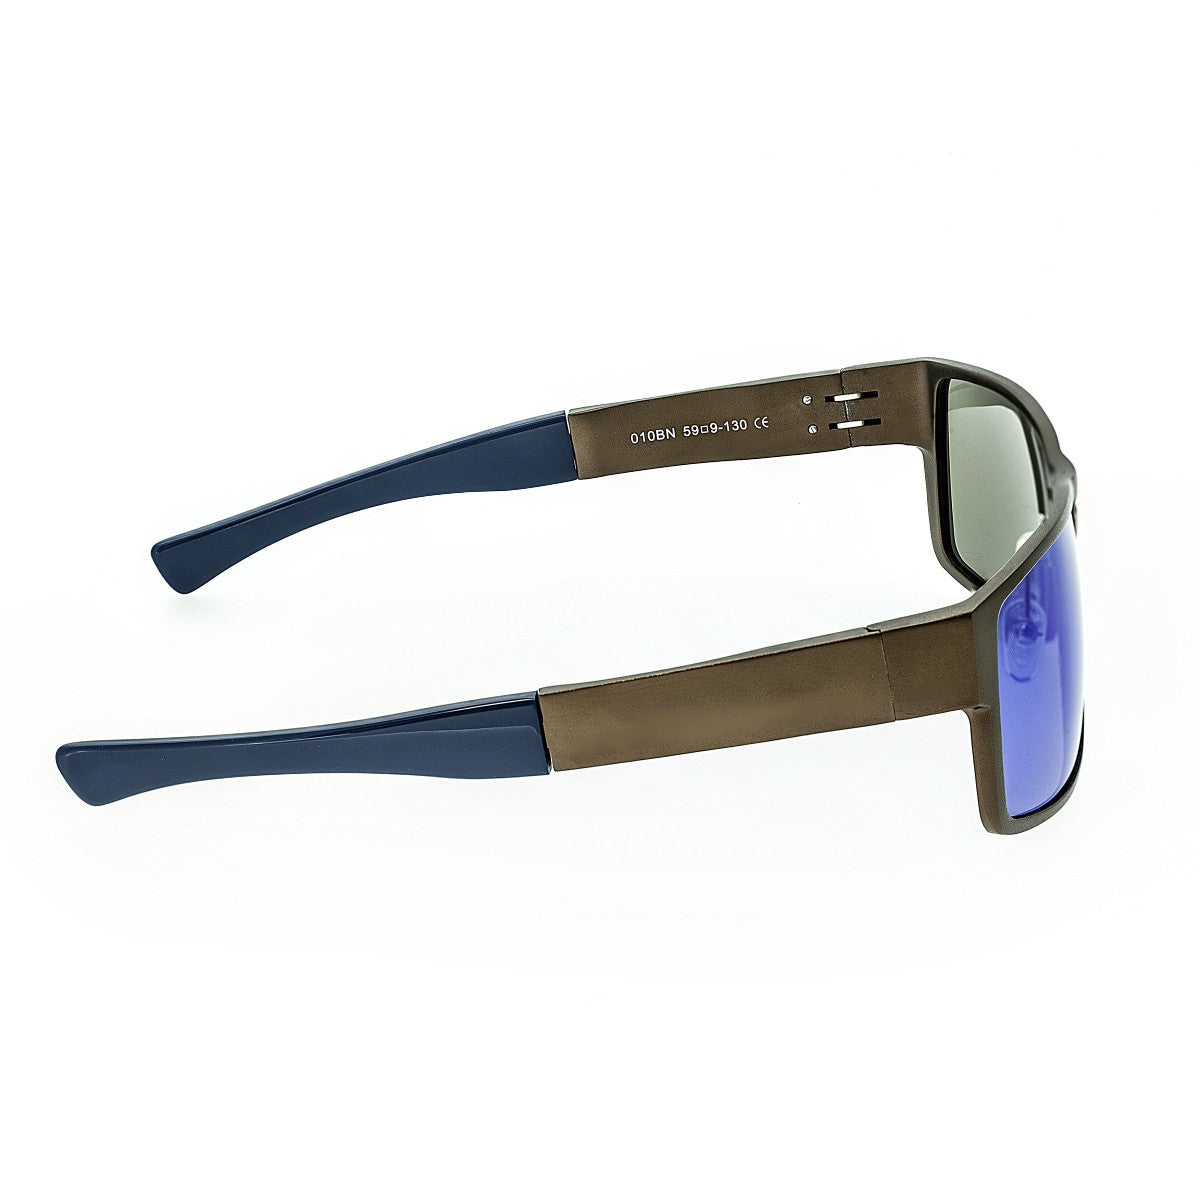 Breed Stratus Aluminium Polarized Sunglasses - Brown/Blue - BSG010BN